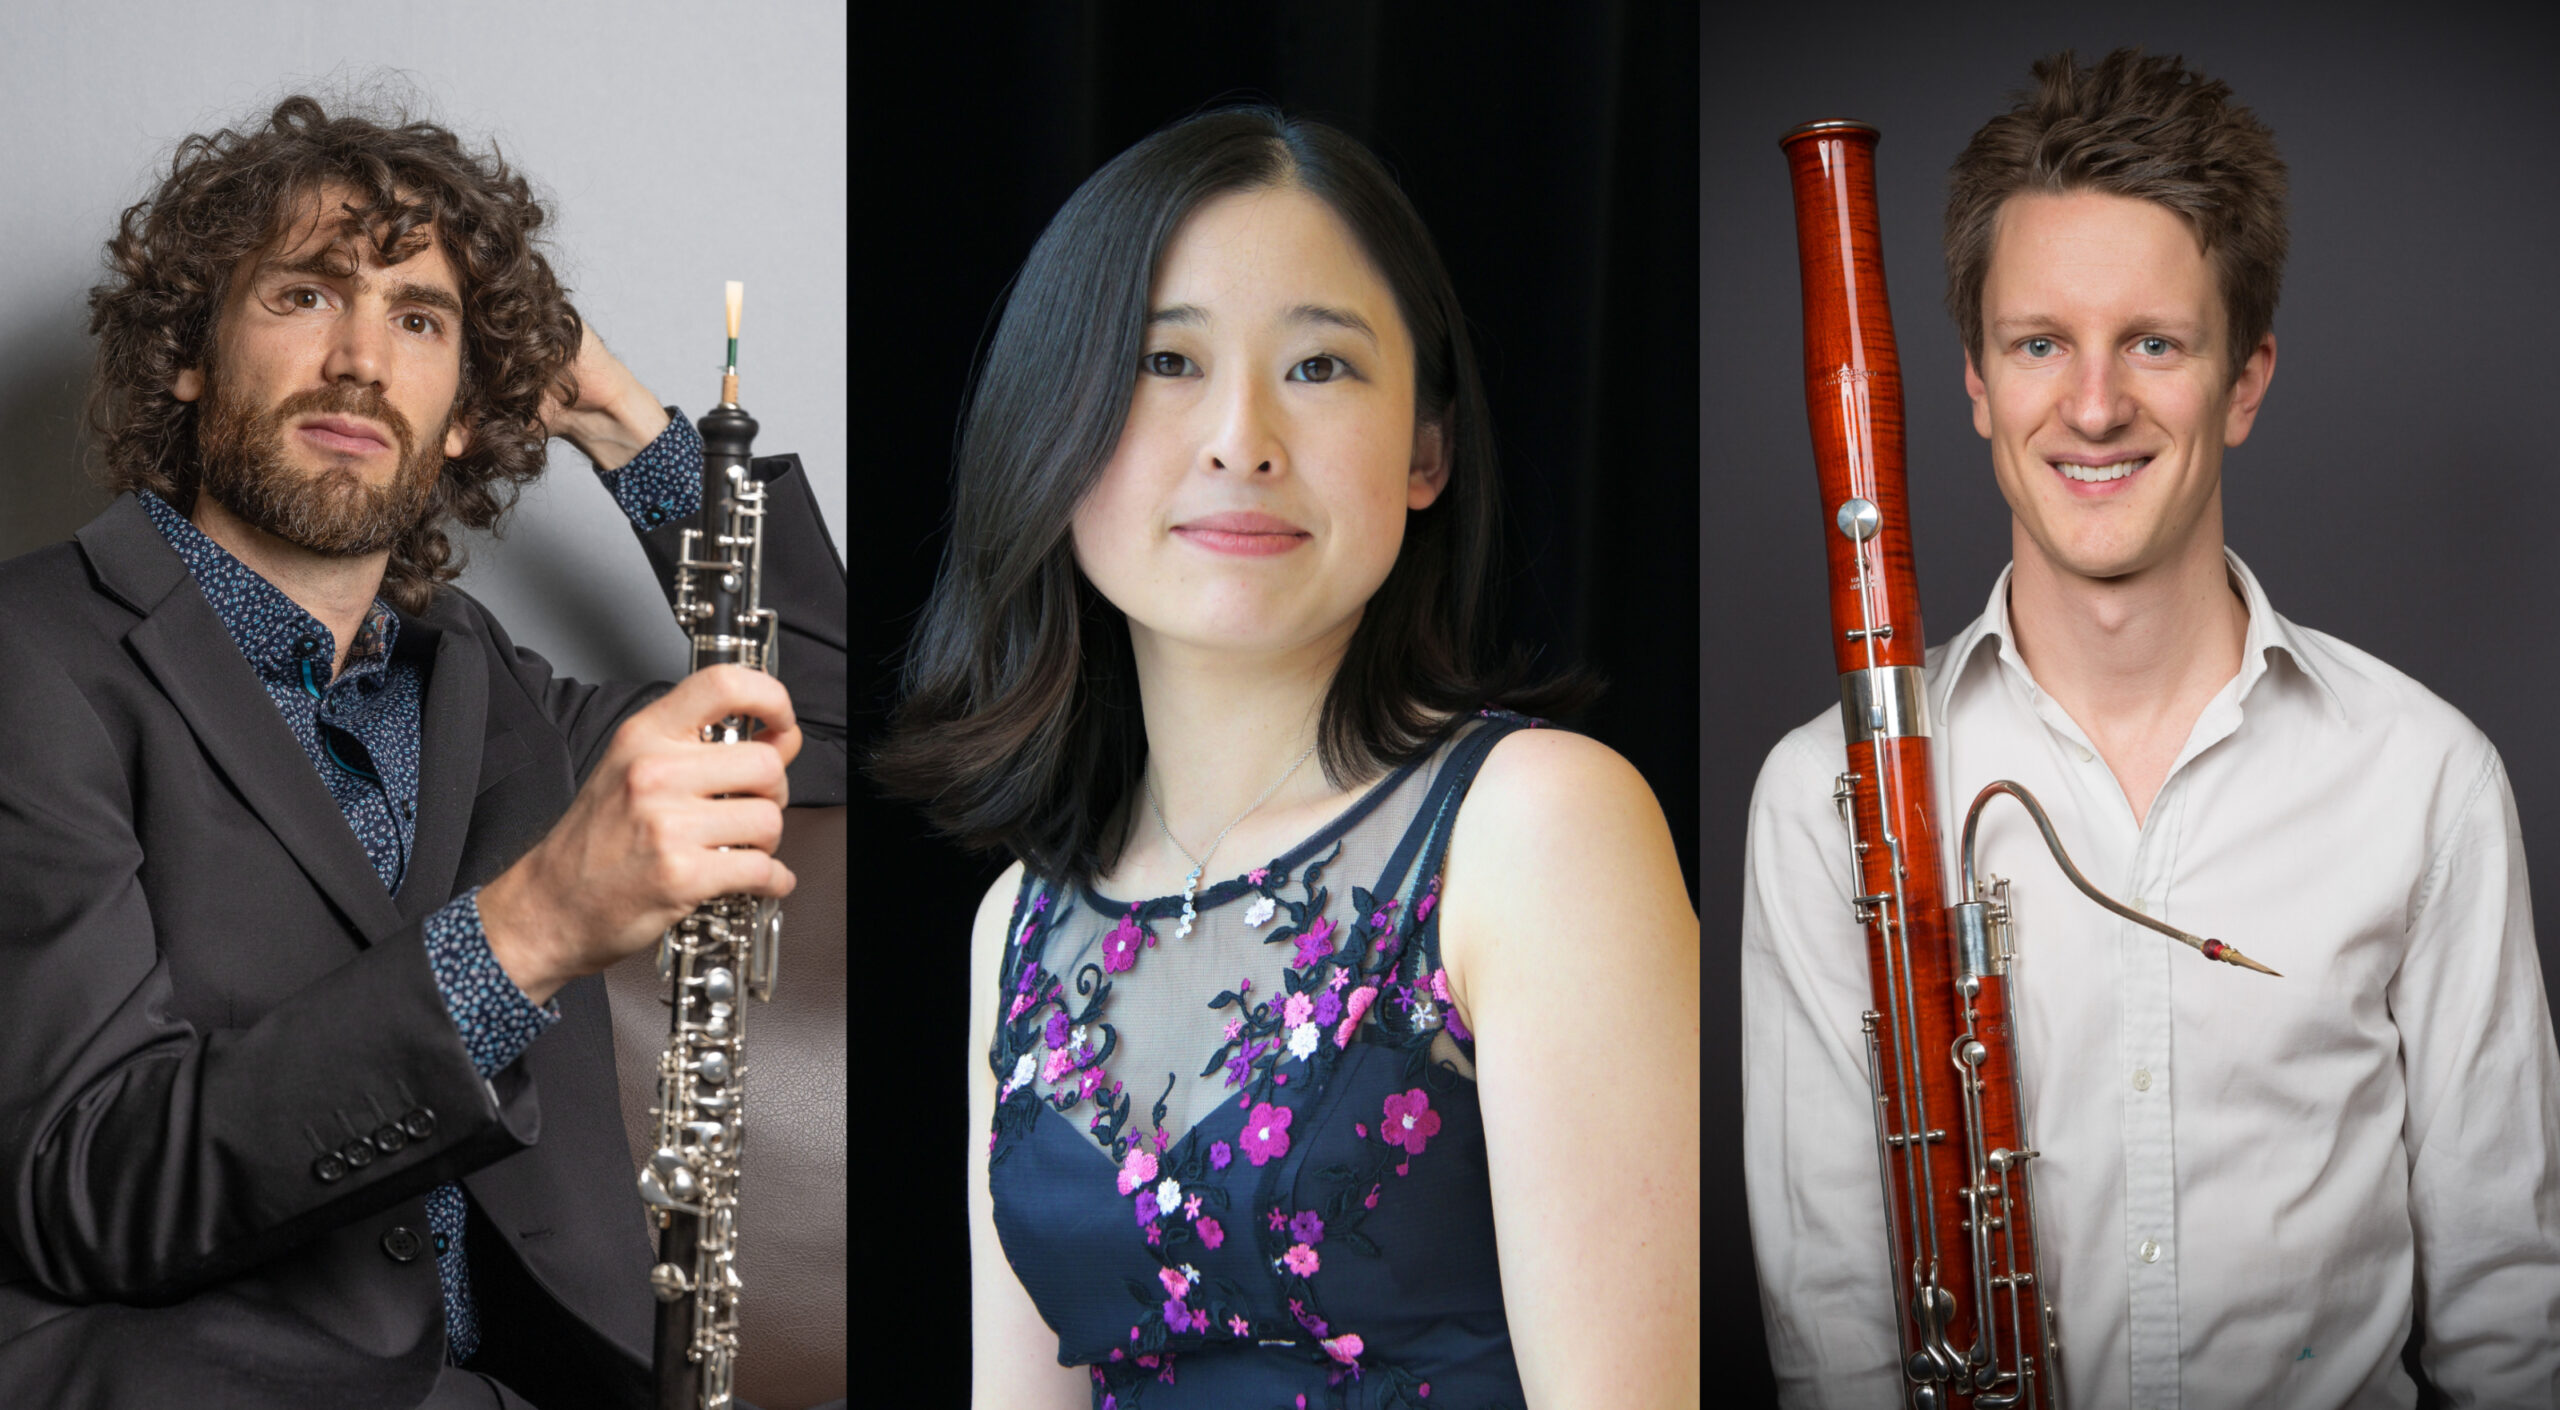 Emmanuel Laville med oboe i handen, andra handen bakom huvudet. Asuka Nakamura. Sebastian Stevensson med fagott. Fotokollage.